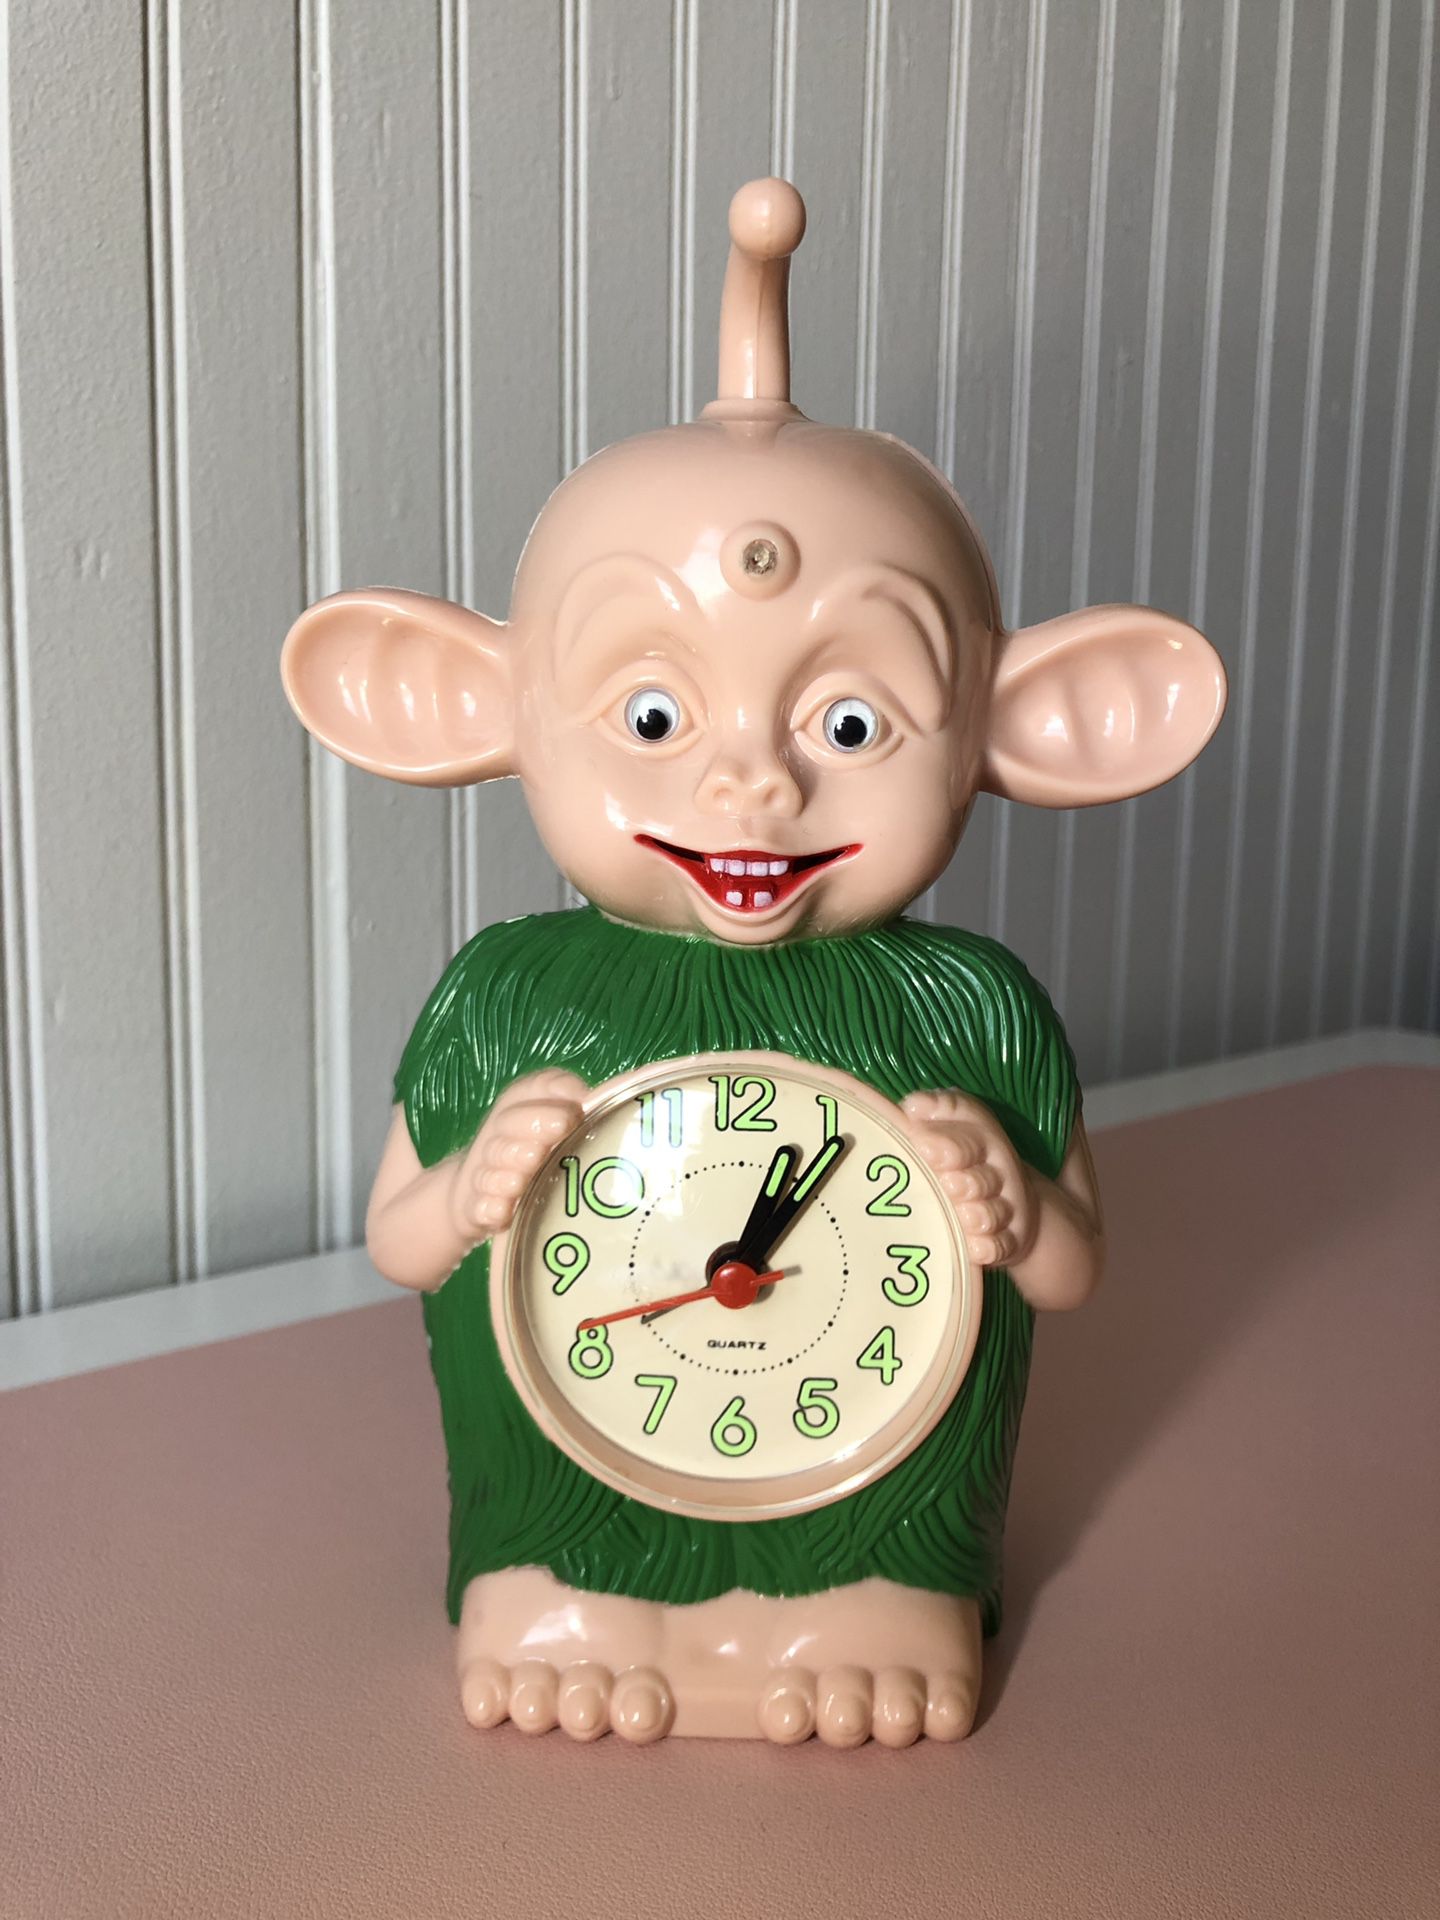 Rare Bibo Talking Alarm Clock